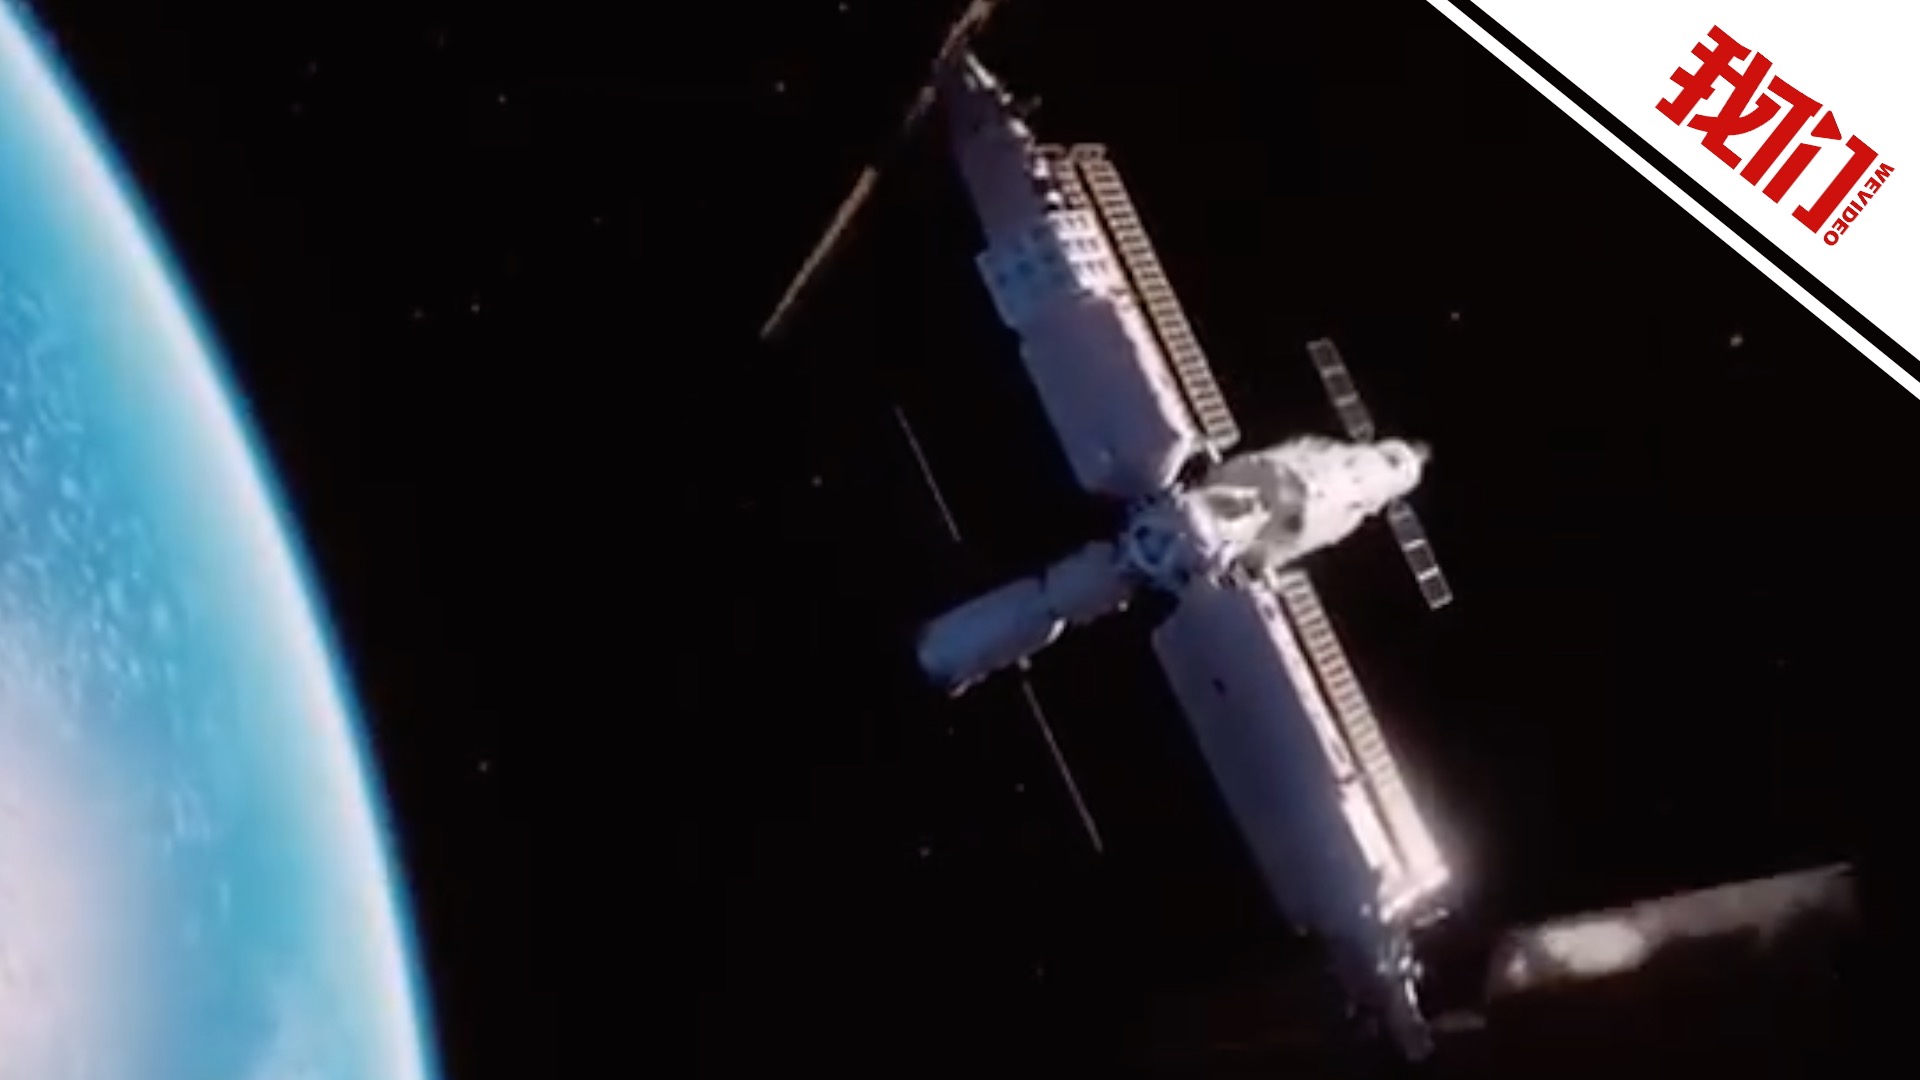 梦天舱与空间站组合体在轨完成交会对接 过程历时约13小时